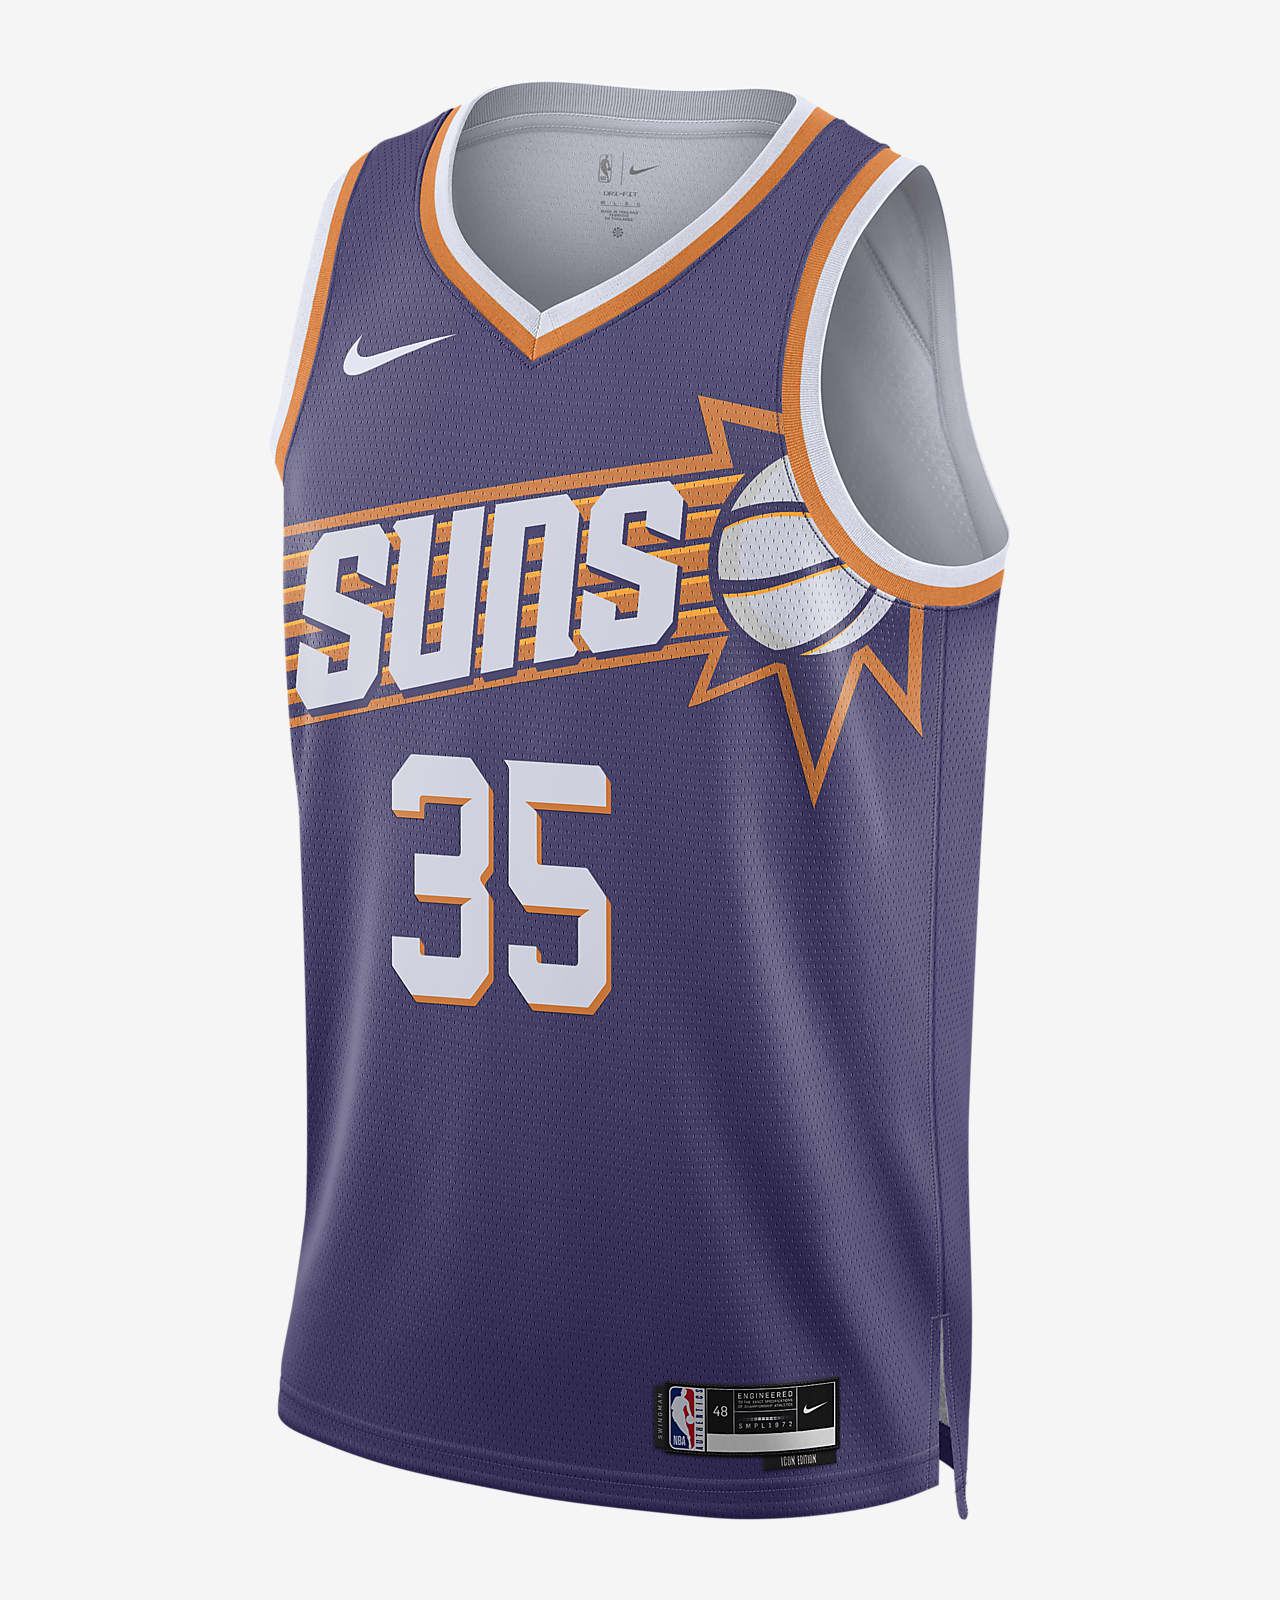 2023/24 赛季菲尼克斯太阳队 Icon Edition Nike Dri-FIT NBA Swingman Jersey 男子速干球衣